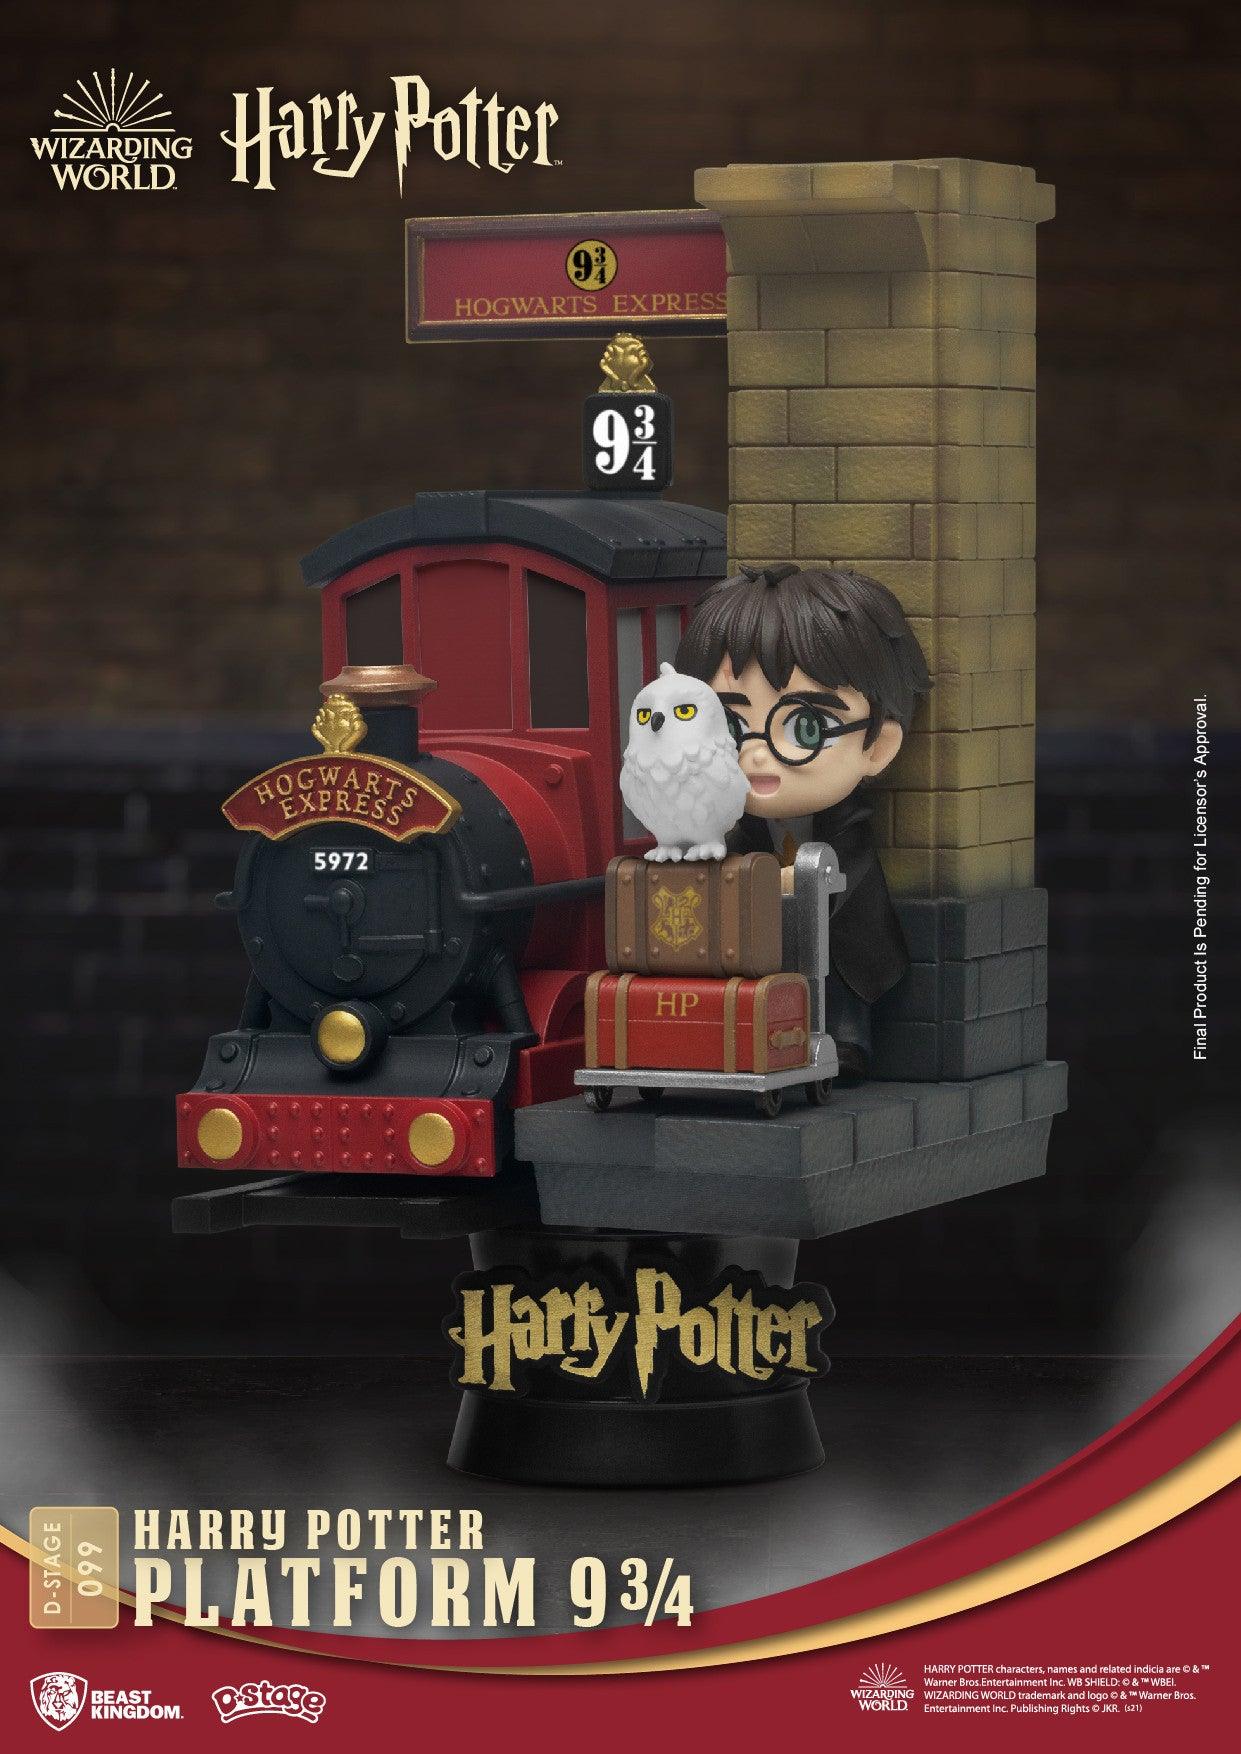 VR-94345 Beast Kingdom D Stage Harry Potter Platform 9 3/4 - Beast Kingdom - Titan Pop Culture